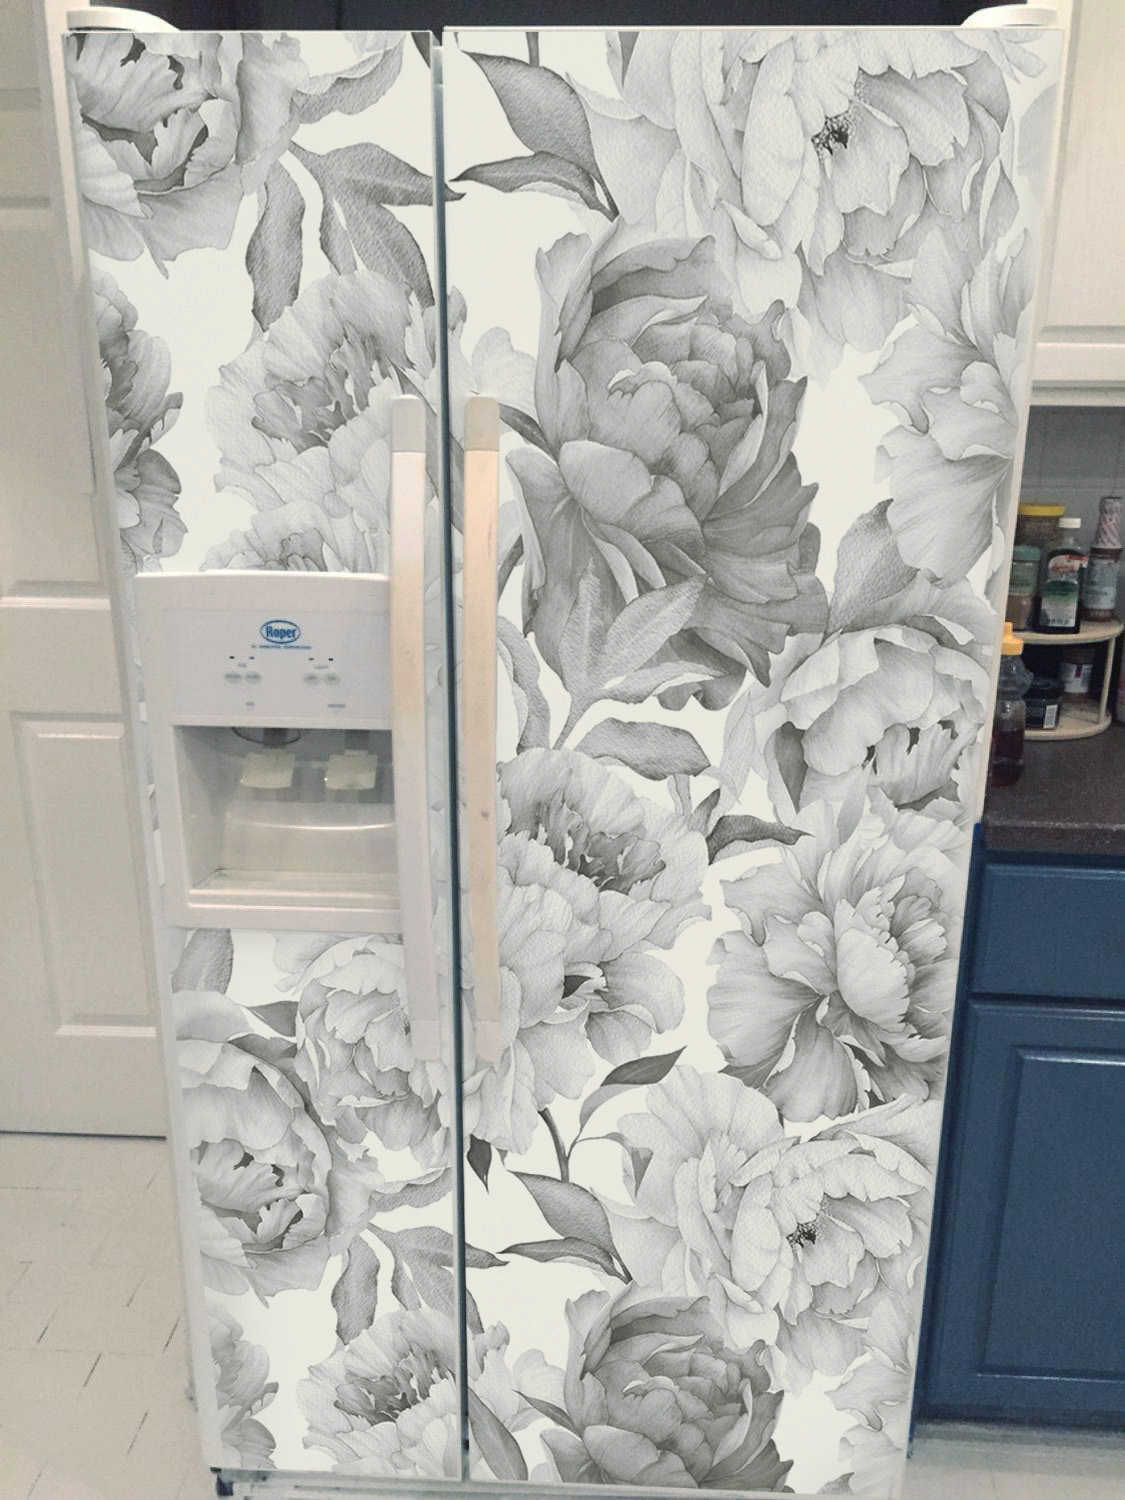 наклейка на холодильник цветы фото, виниловая наклейка на холодильник пионы фото, наклейка на холодильник цветы фото, наклейка на холодильник черно-белая фото